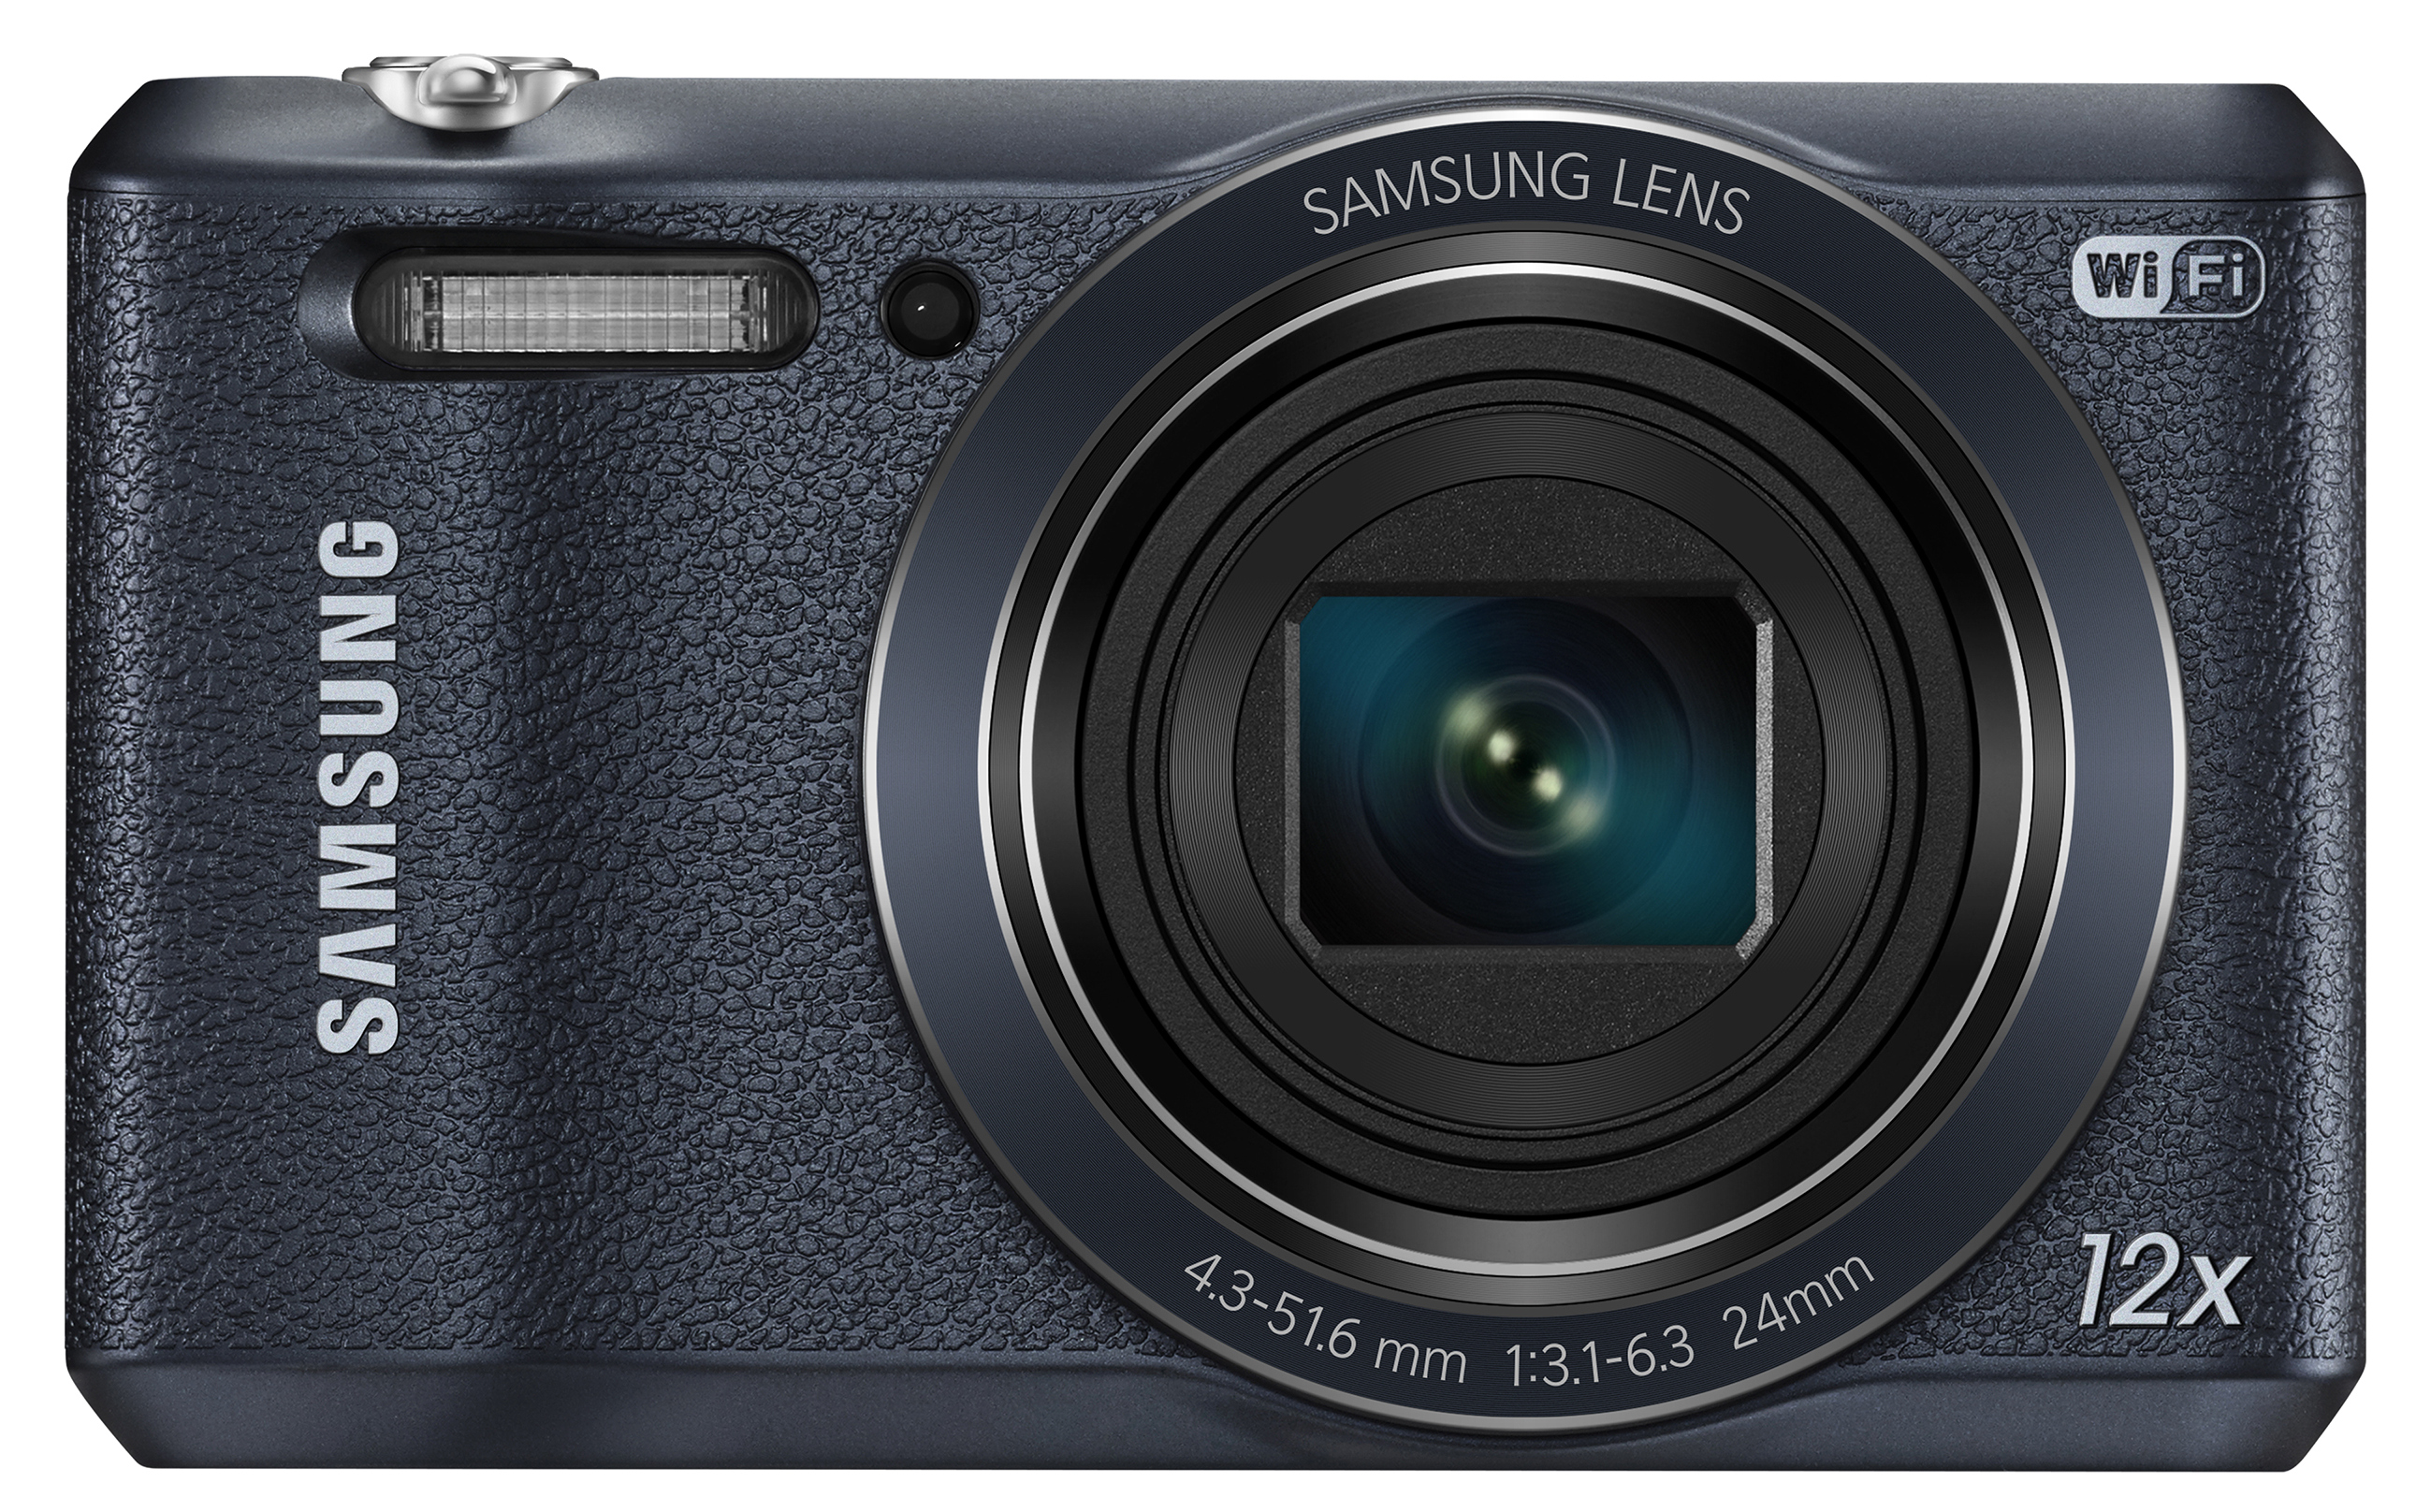 Samsung WB35F Digital Camera